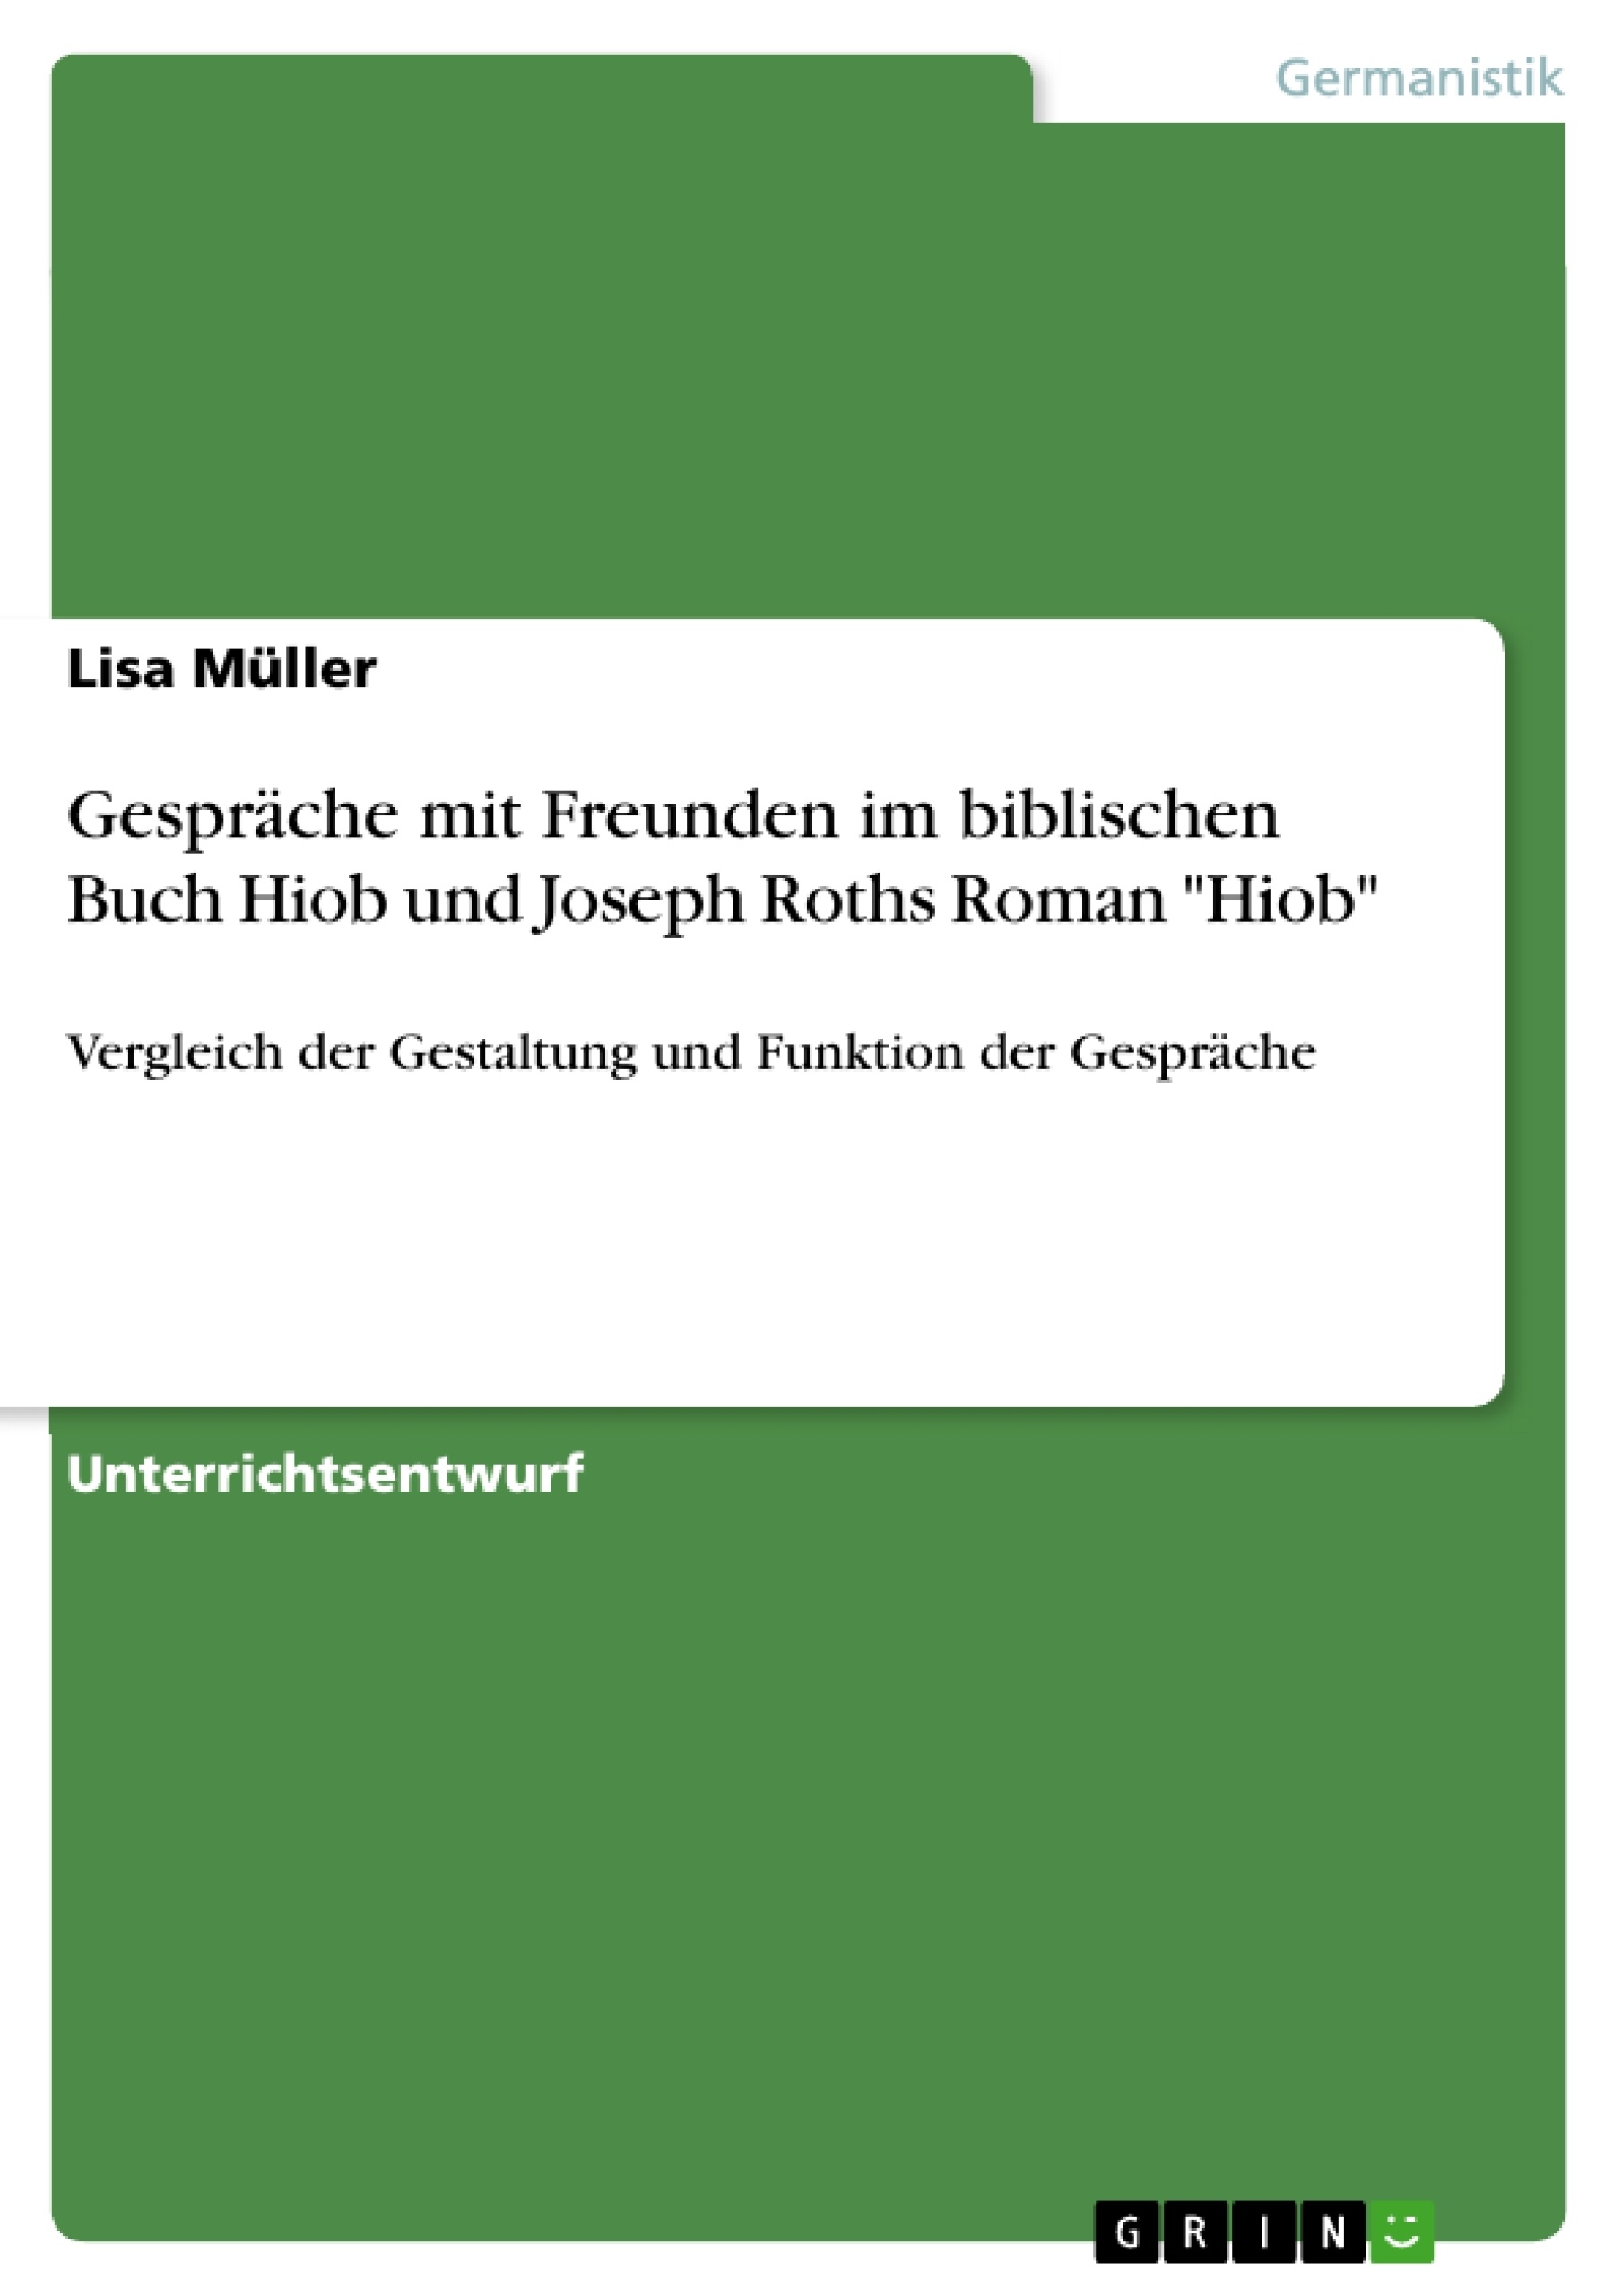 Título: Gespräche mit Freunden im biblischen Buch Hiob und Joseph Roths Roman "Hiob"